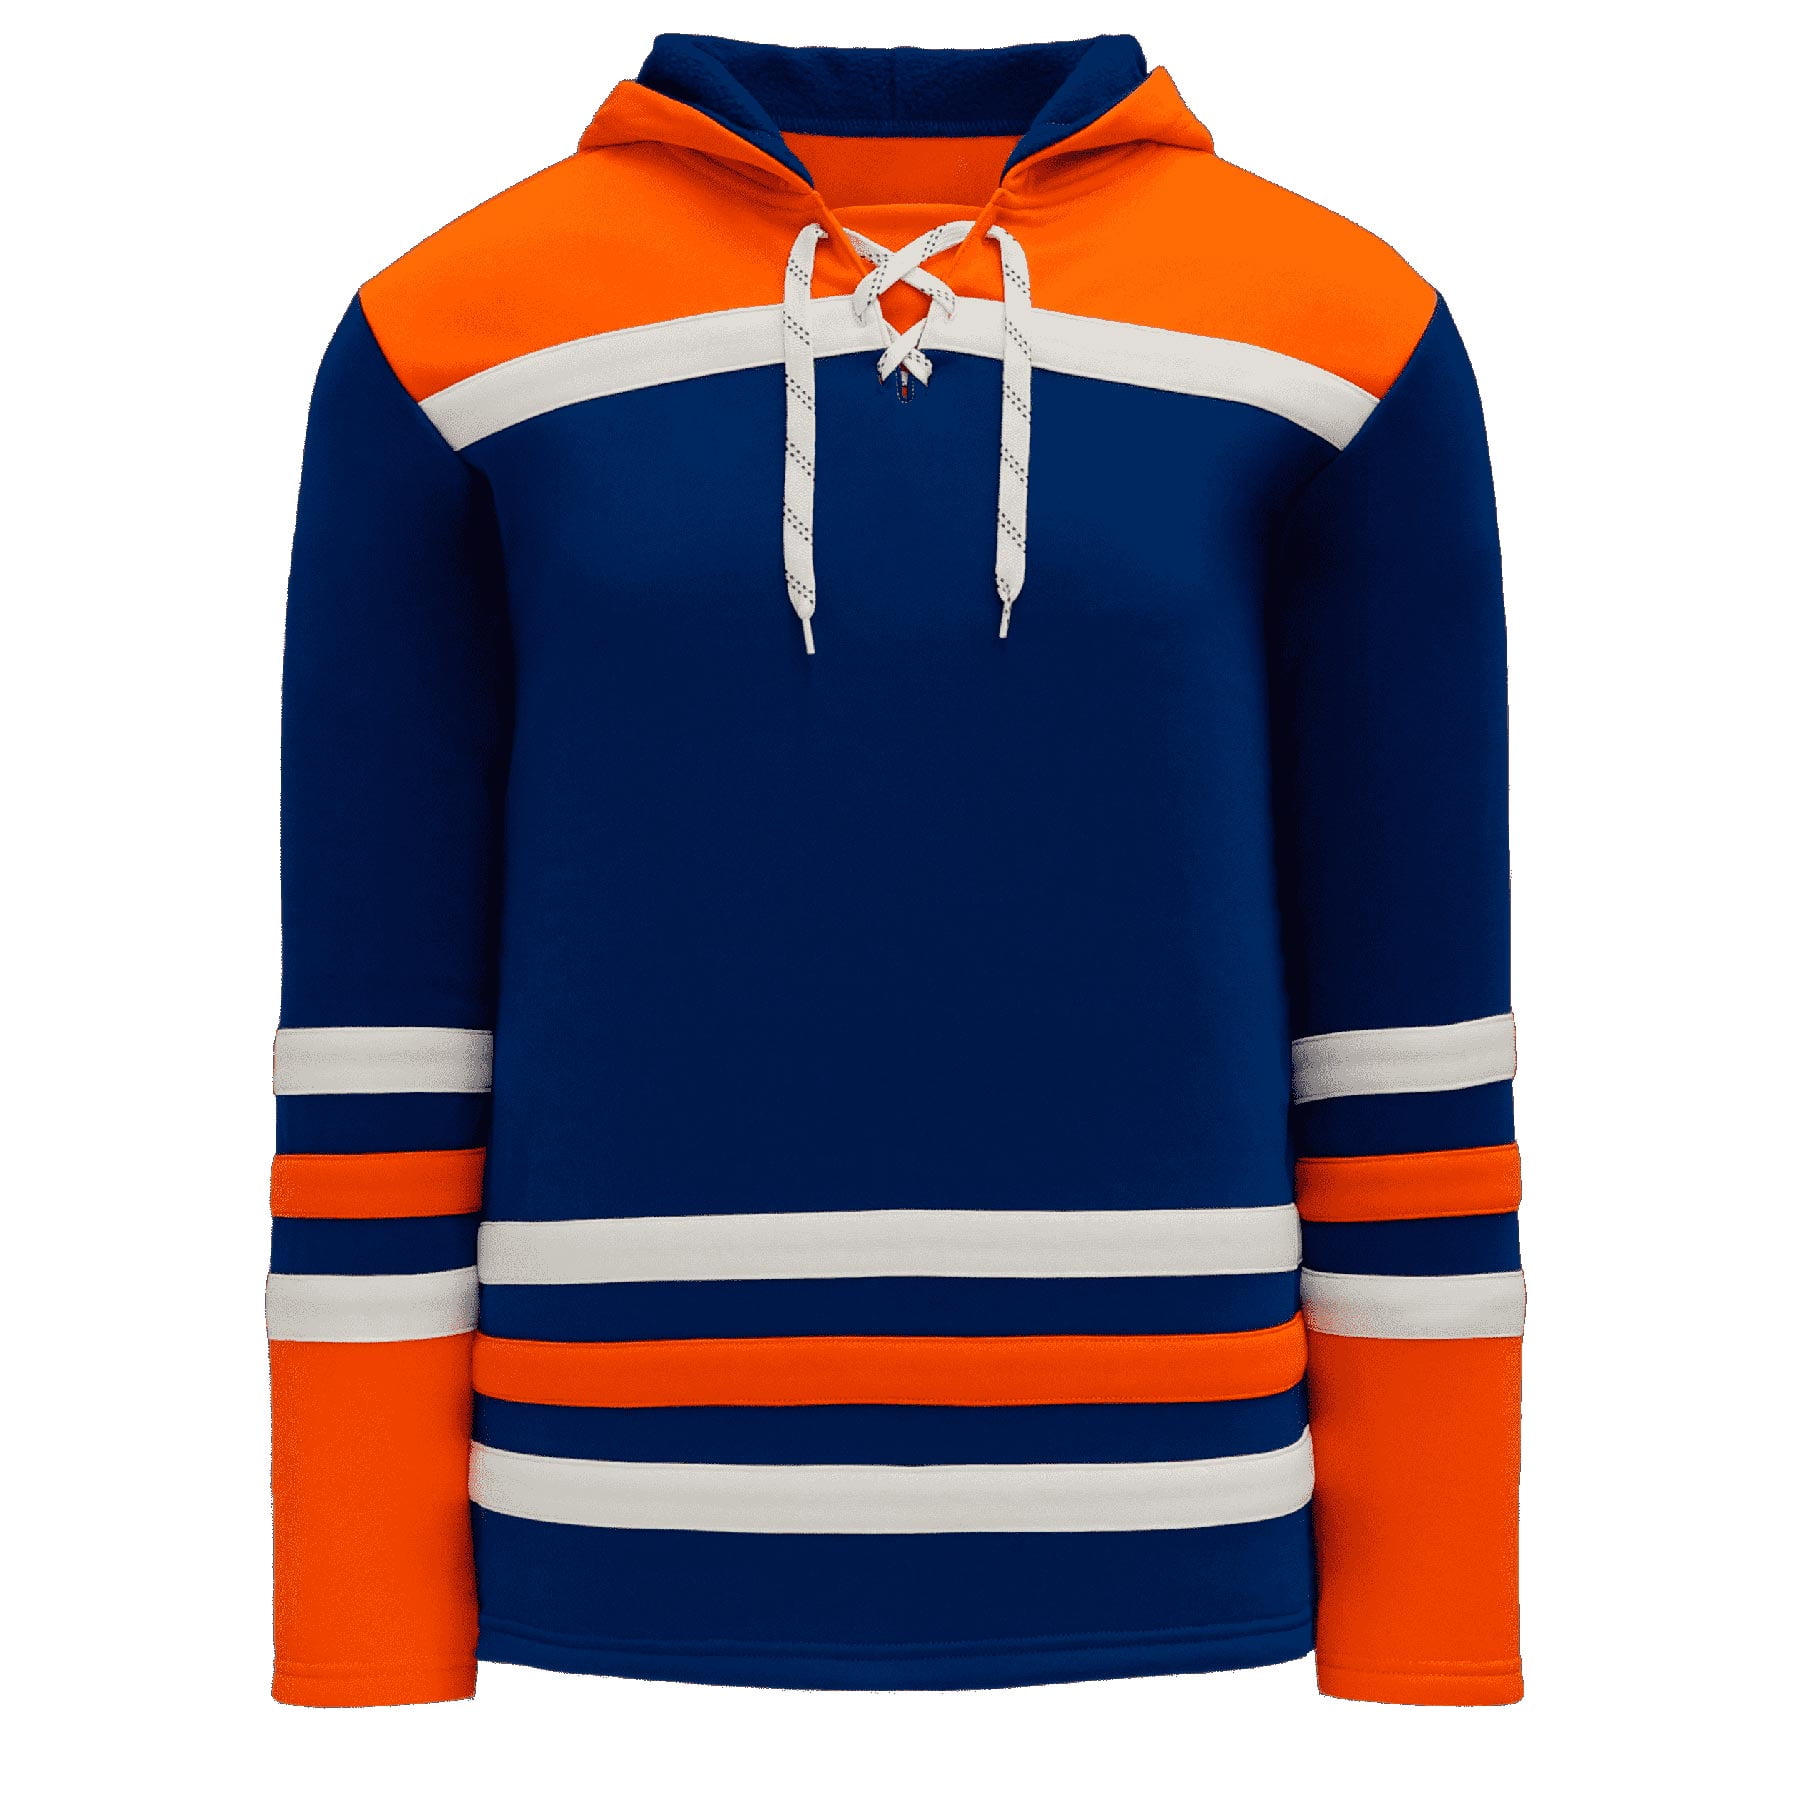 hoodie under hockey jersey